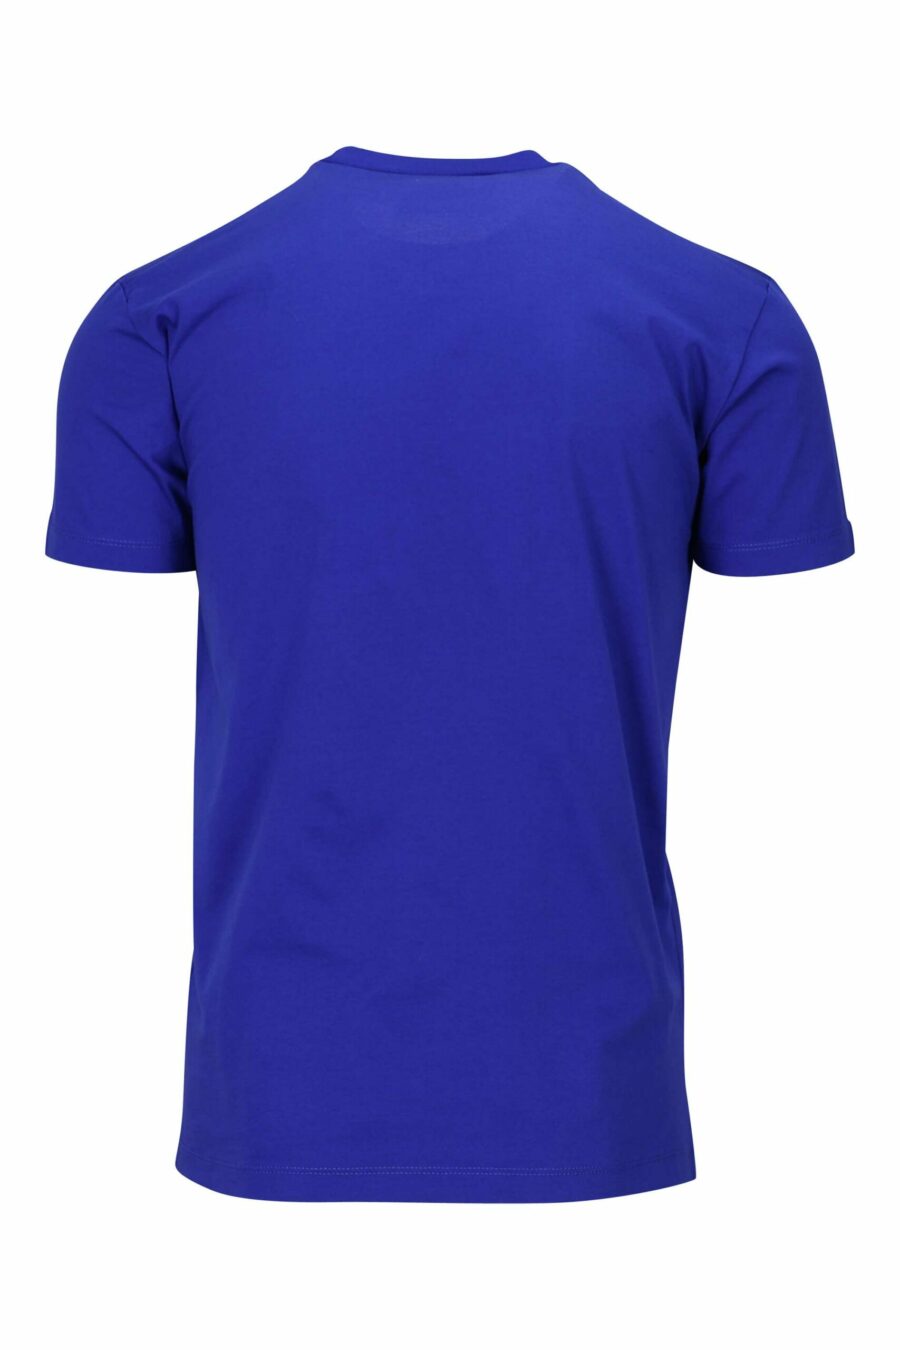 T-shirt bleu électrique avec maxilogo "icon" blanc - 8054148035525 1 scaled